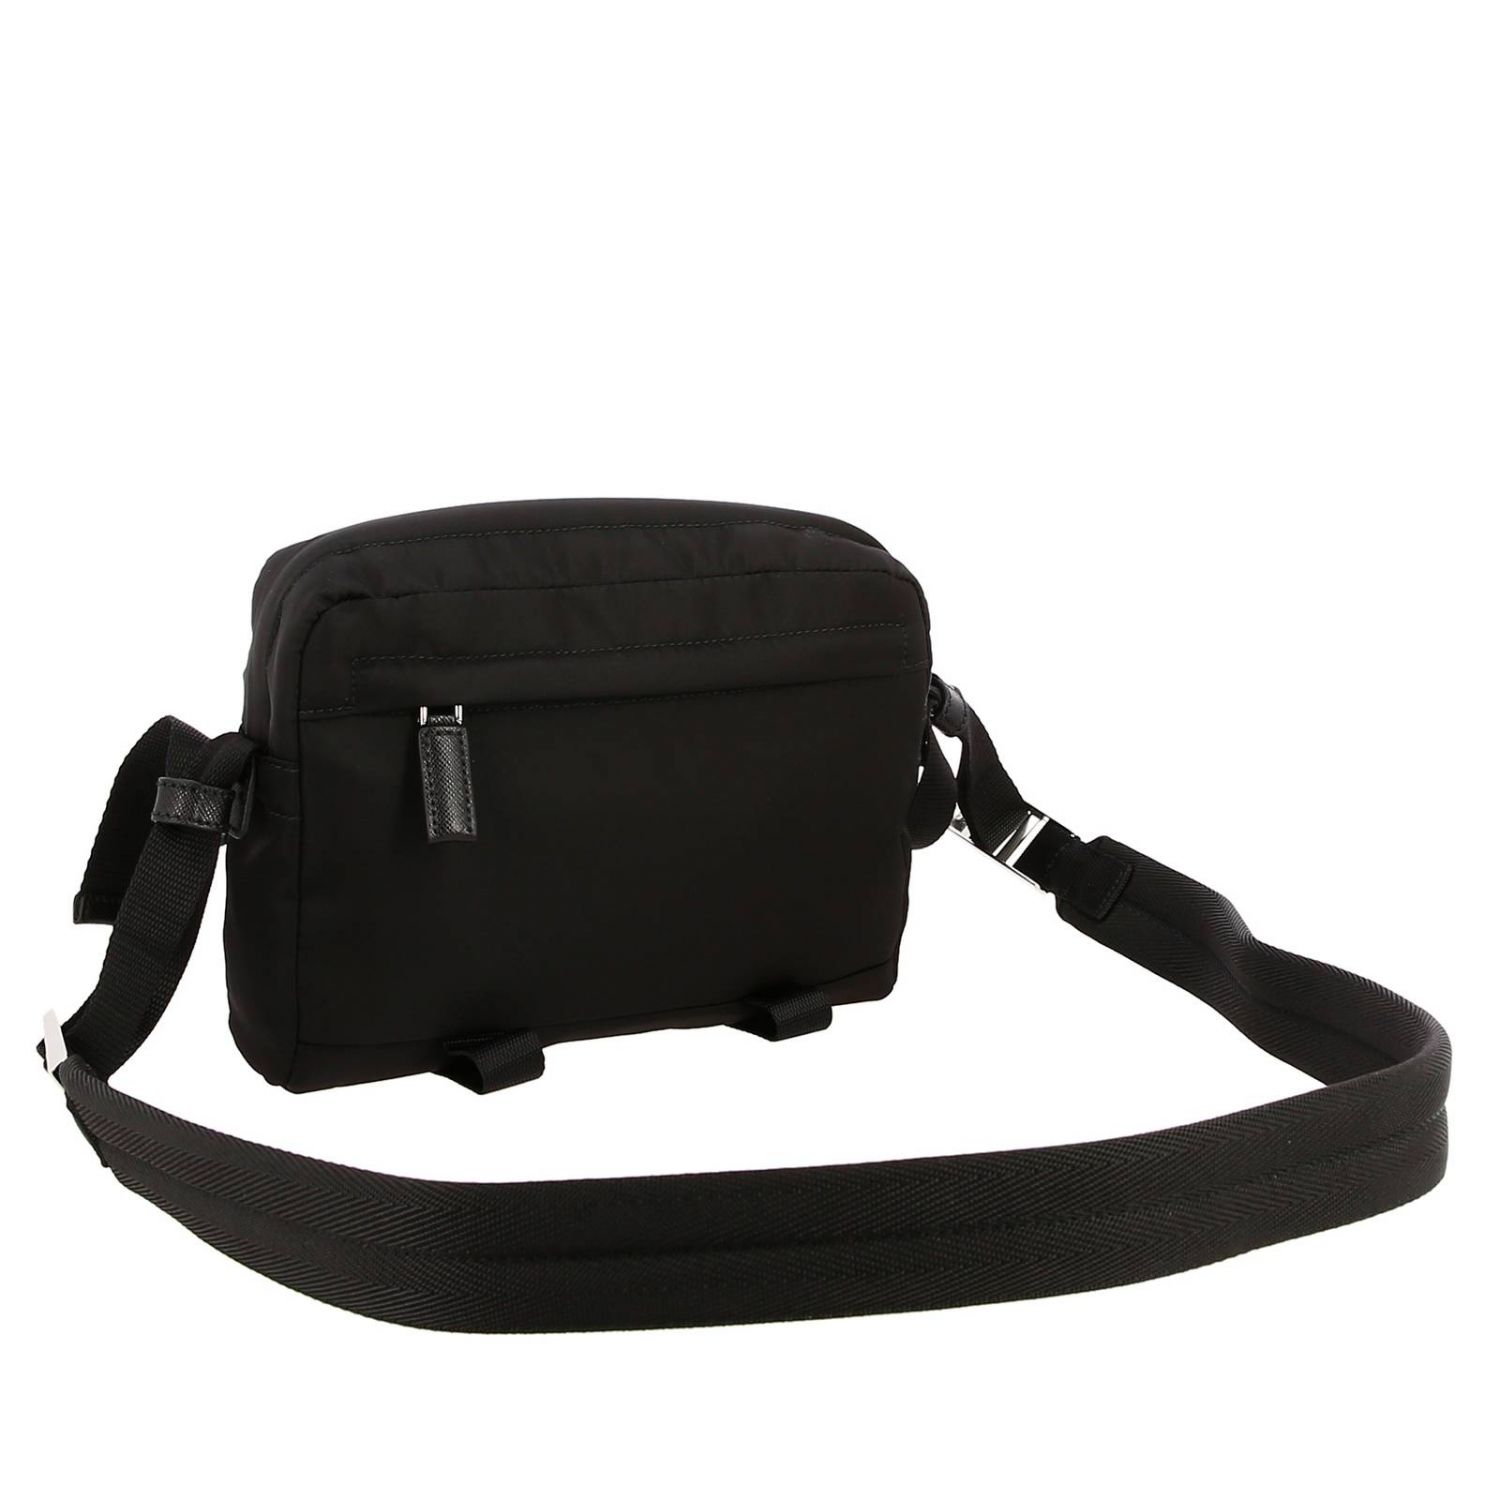 PRADA: Bandolier Camera Nylon Bag with triangular logo | Shoulder Bag ...